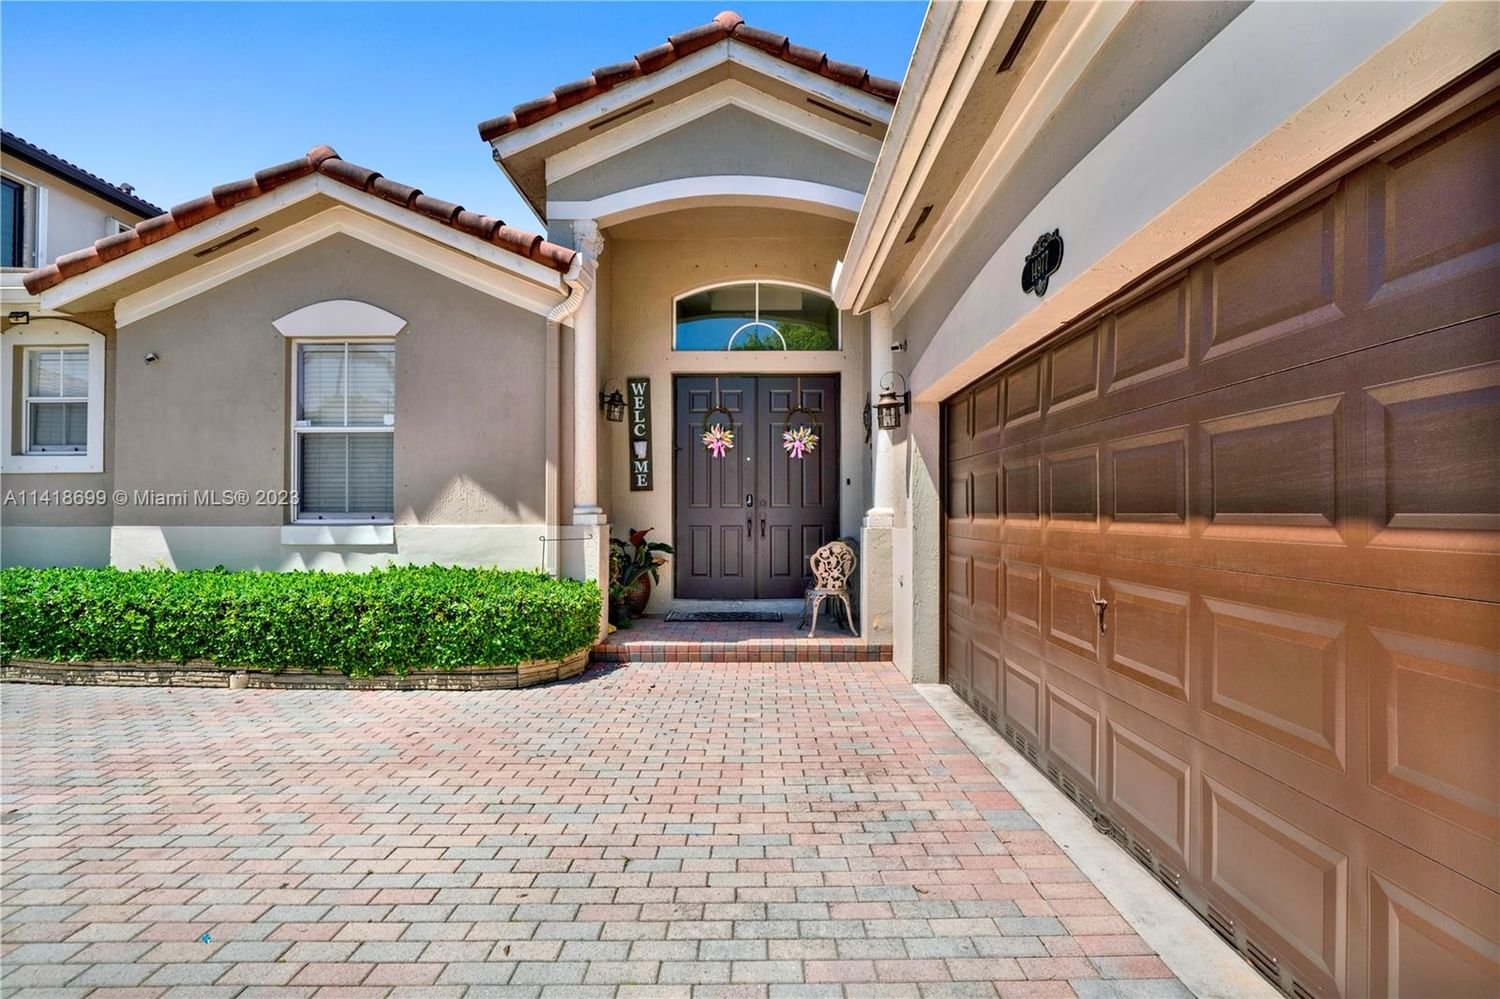 Real estate property located at 14977 12th Ln, Miami-Dade County, Miami, FL